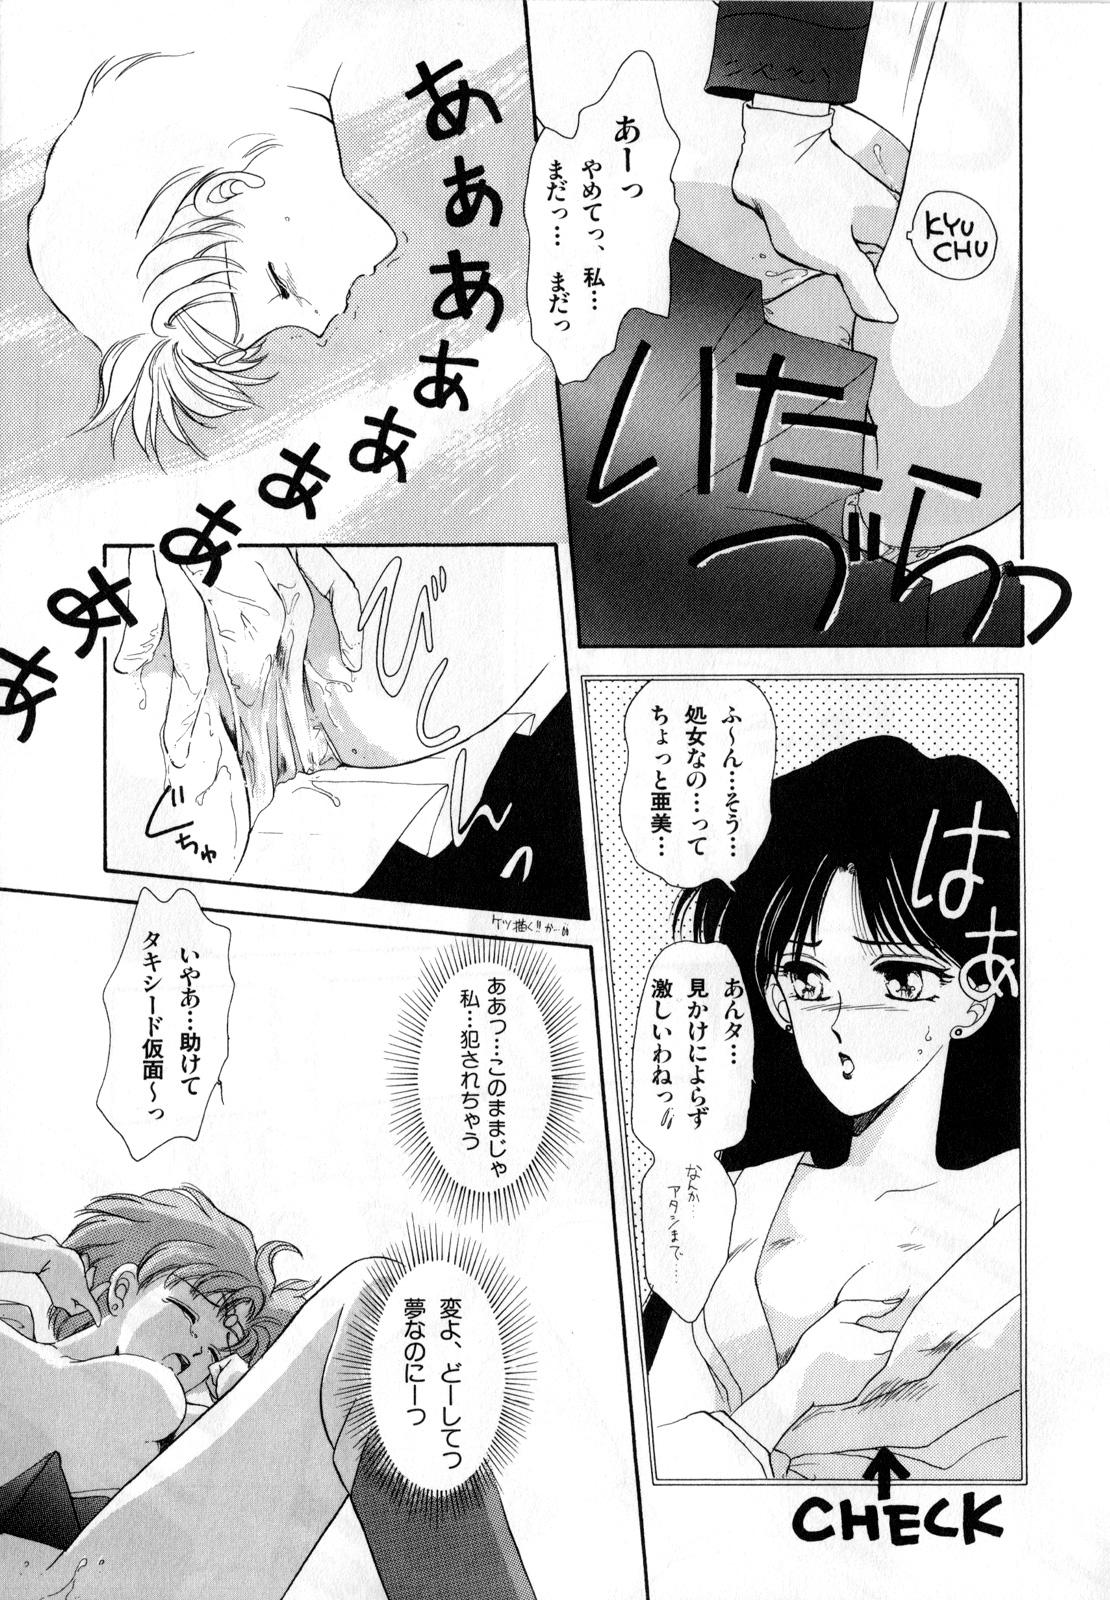 Cheerleader Lunatic Party 1 - Sailor moon Hymen - Page 12